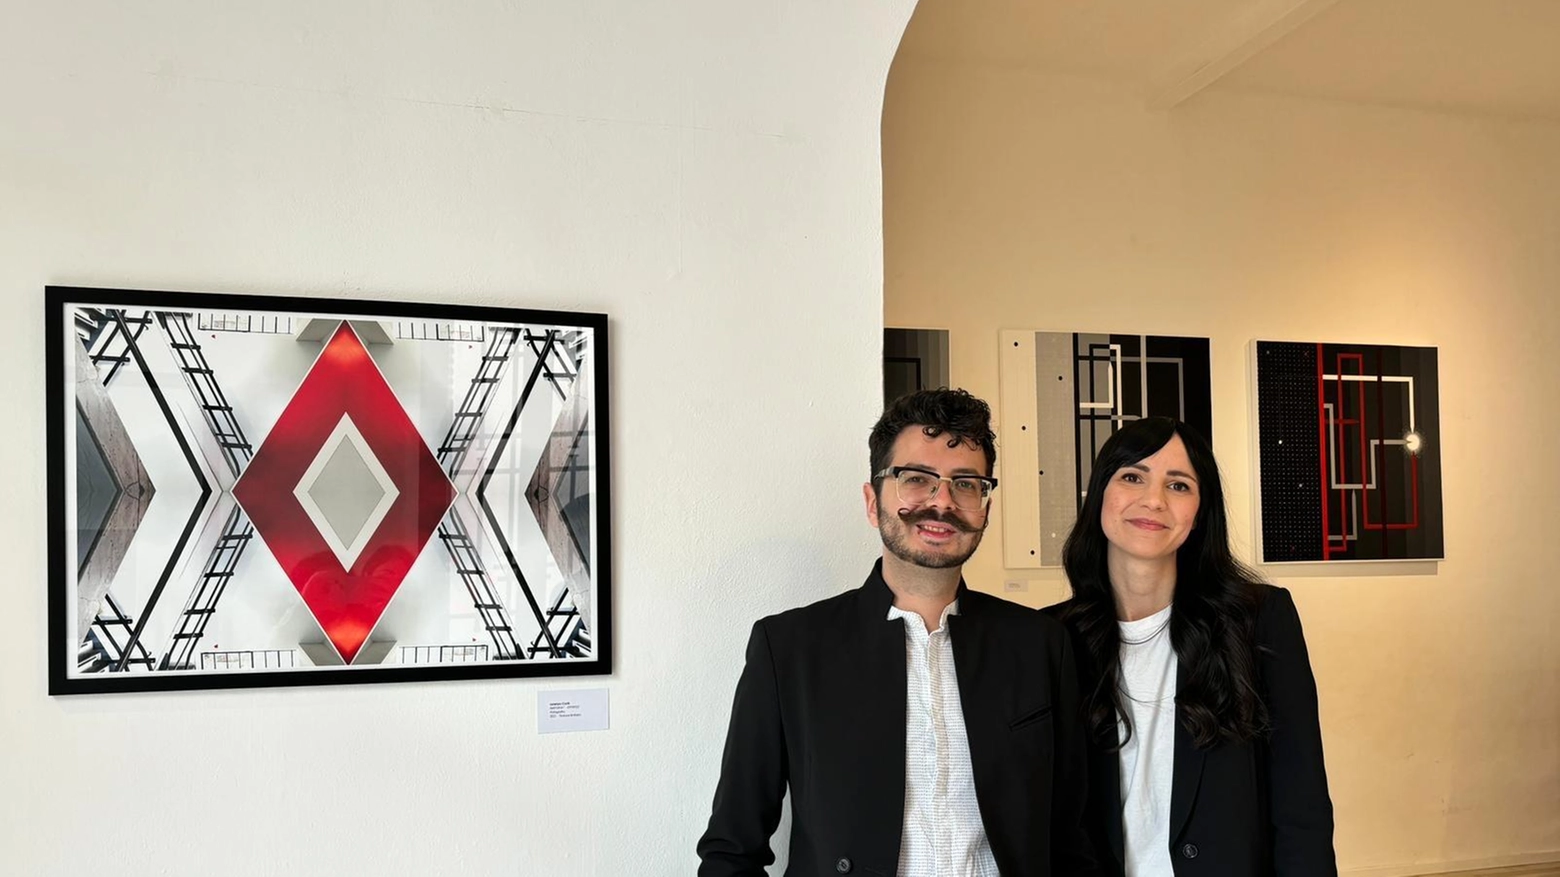 Lorenzo Conti e Giulia Osella espongono alla Galleria Wundergrafik di Forlì con la mostra 'due:tre', esplorando il rapporto tra l'uomo e il mondo attraverso geometrie precise e intense emozioni nelle opere esposte.